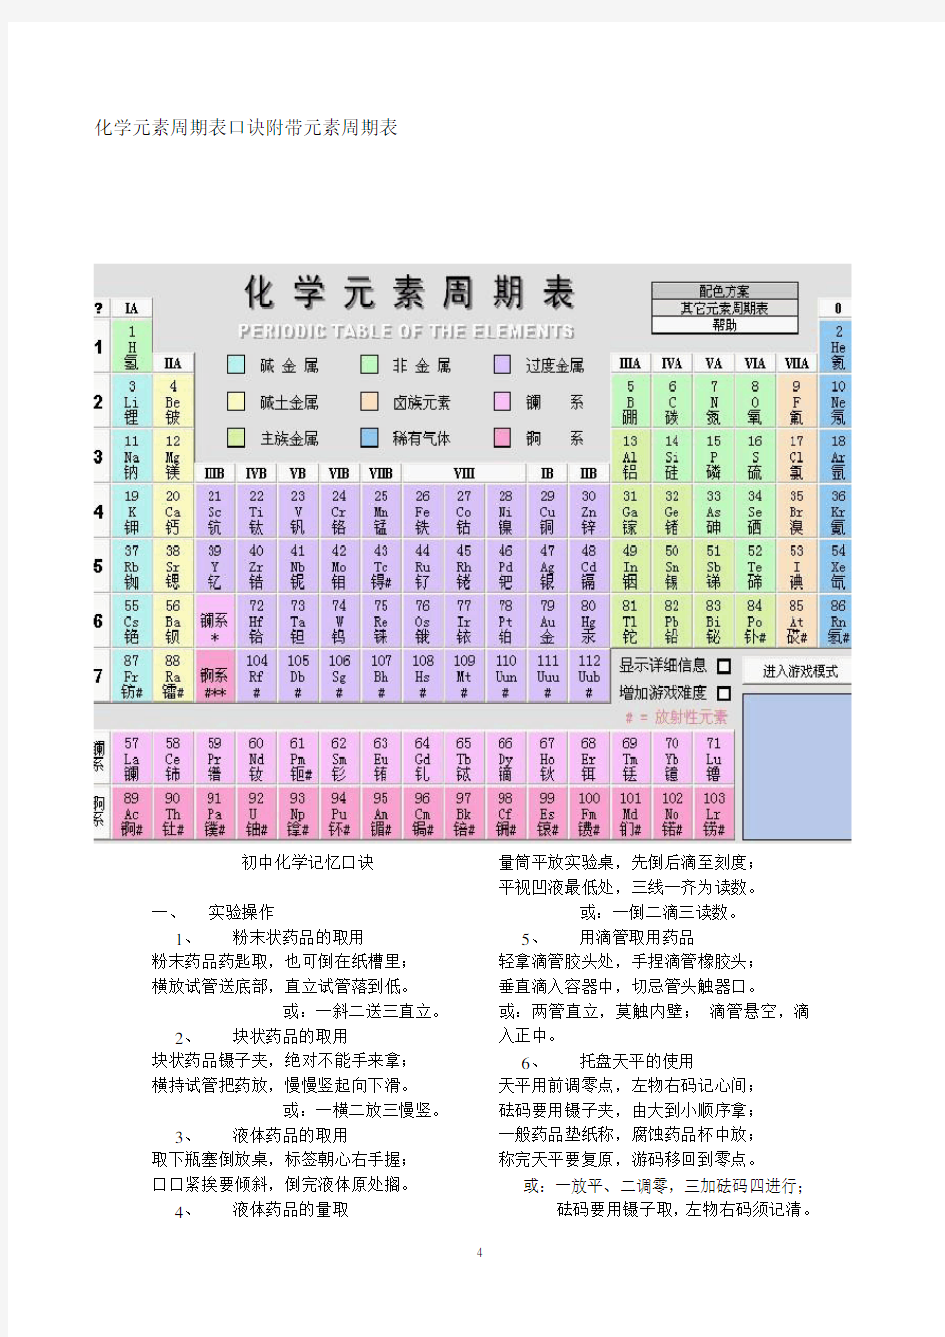 化学元素周期表口诀附带元素周期表及各元素用途